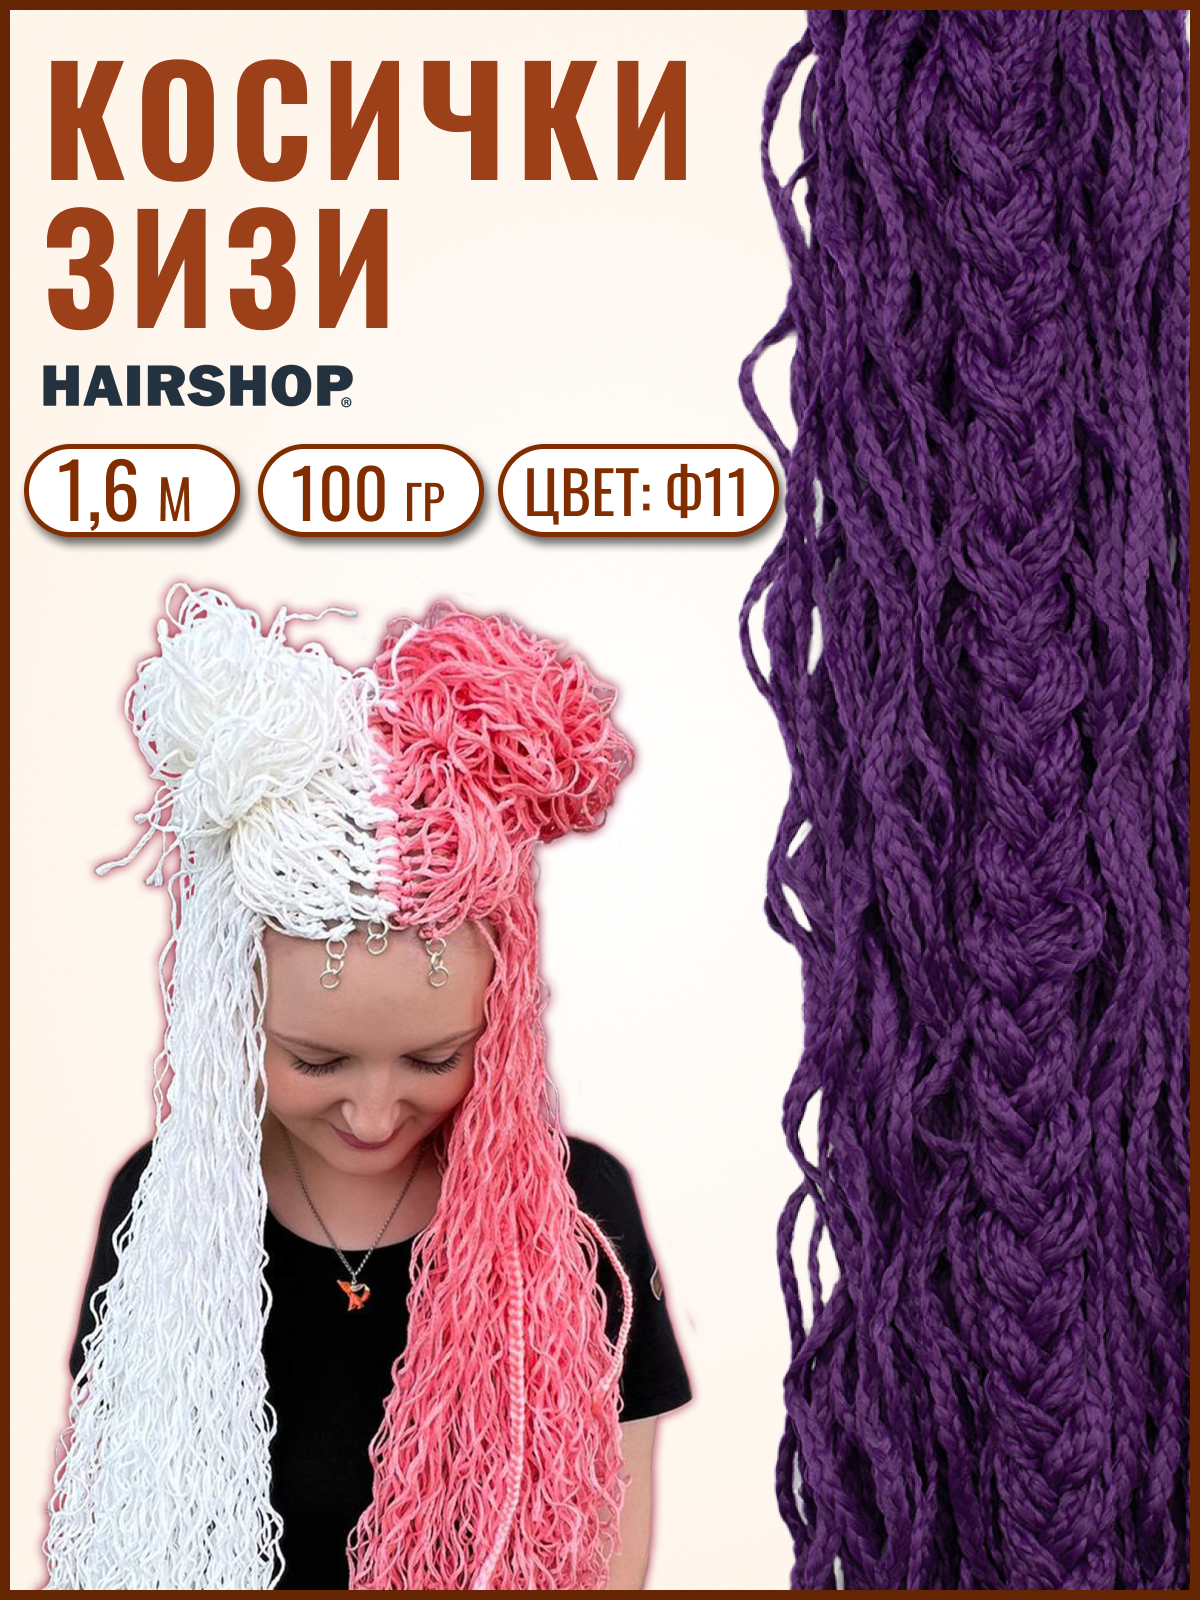 Косички Hairshop Зизи волна Ф11 Фиолетовый карнавальный плащ детский атлас фиолетовый длина 85 см